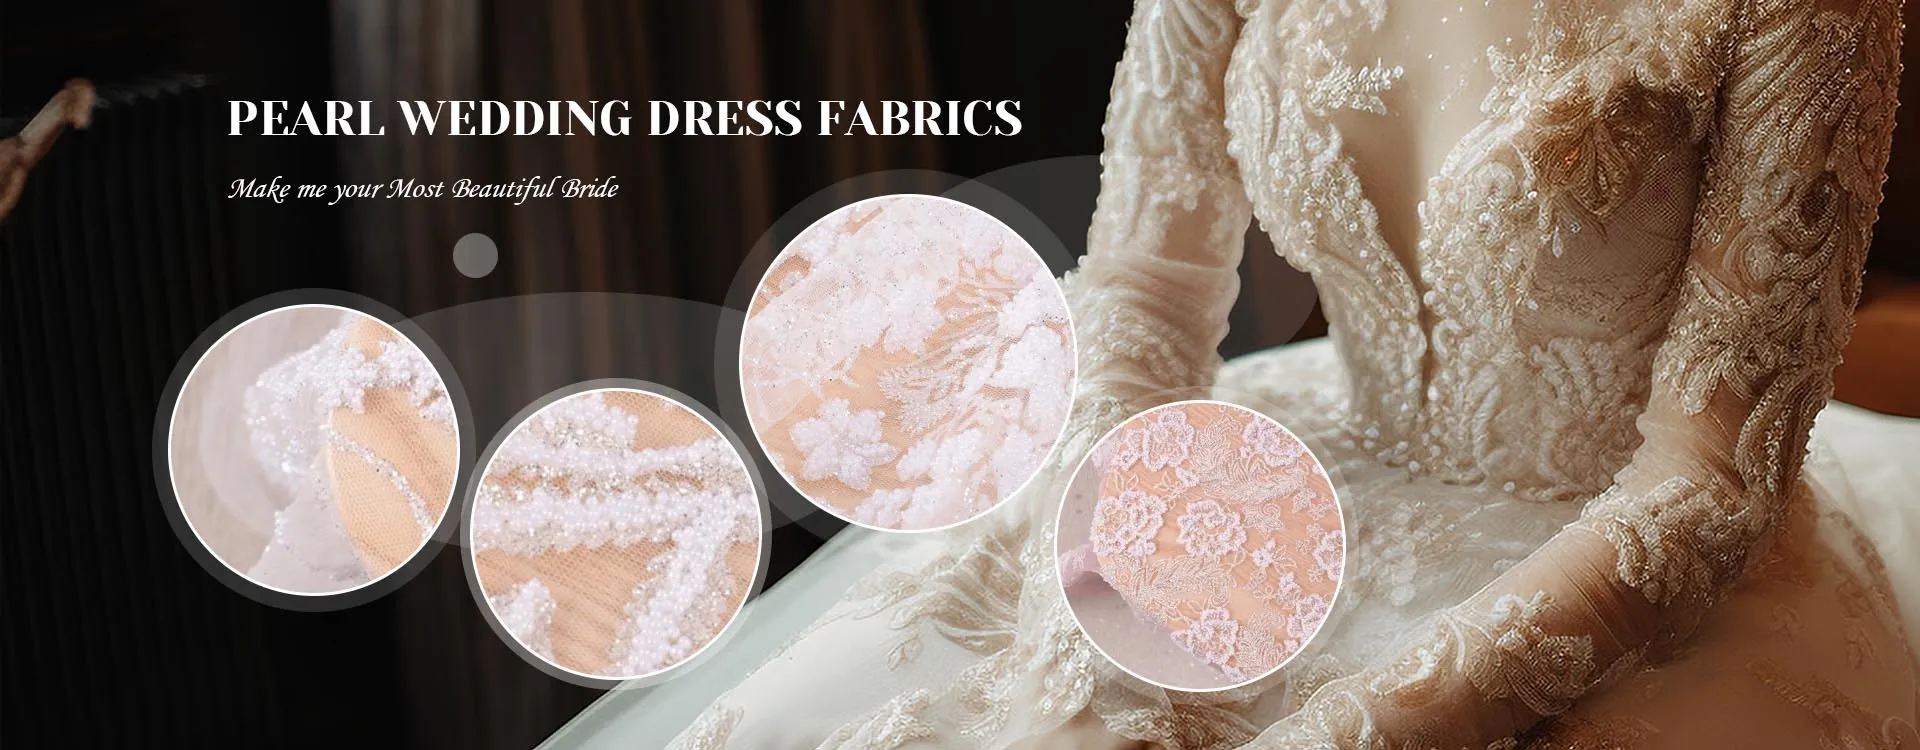 Produttori di tessuti per abiti da sposa in perle cinesi